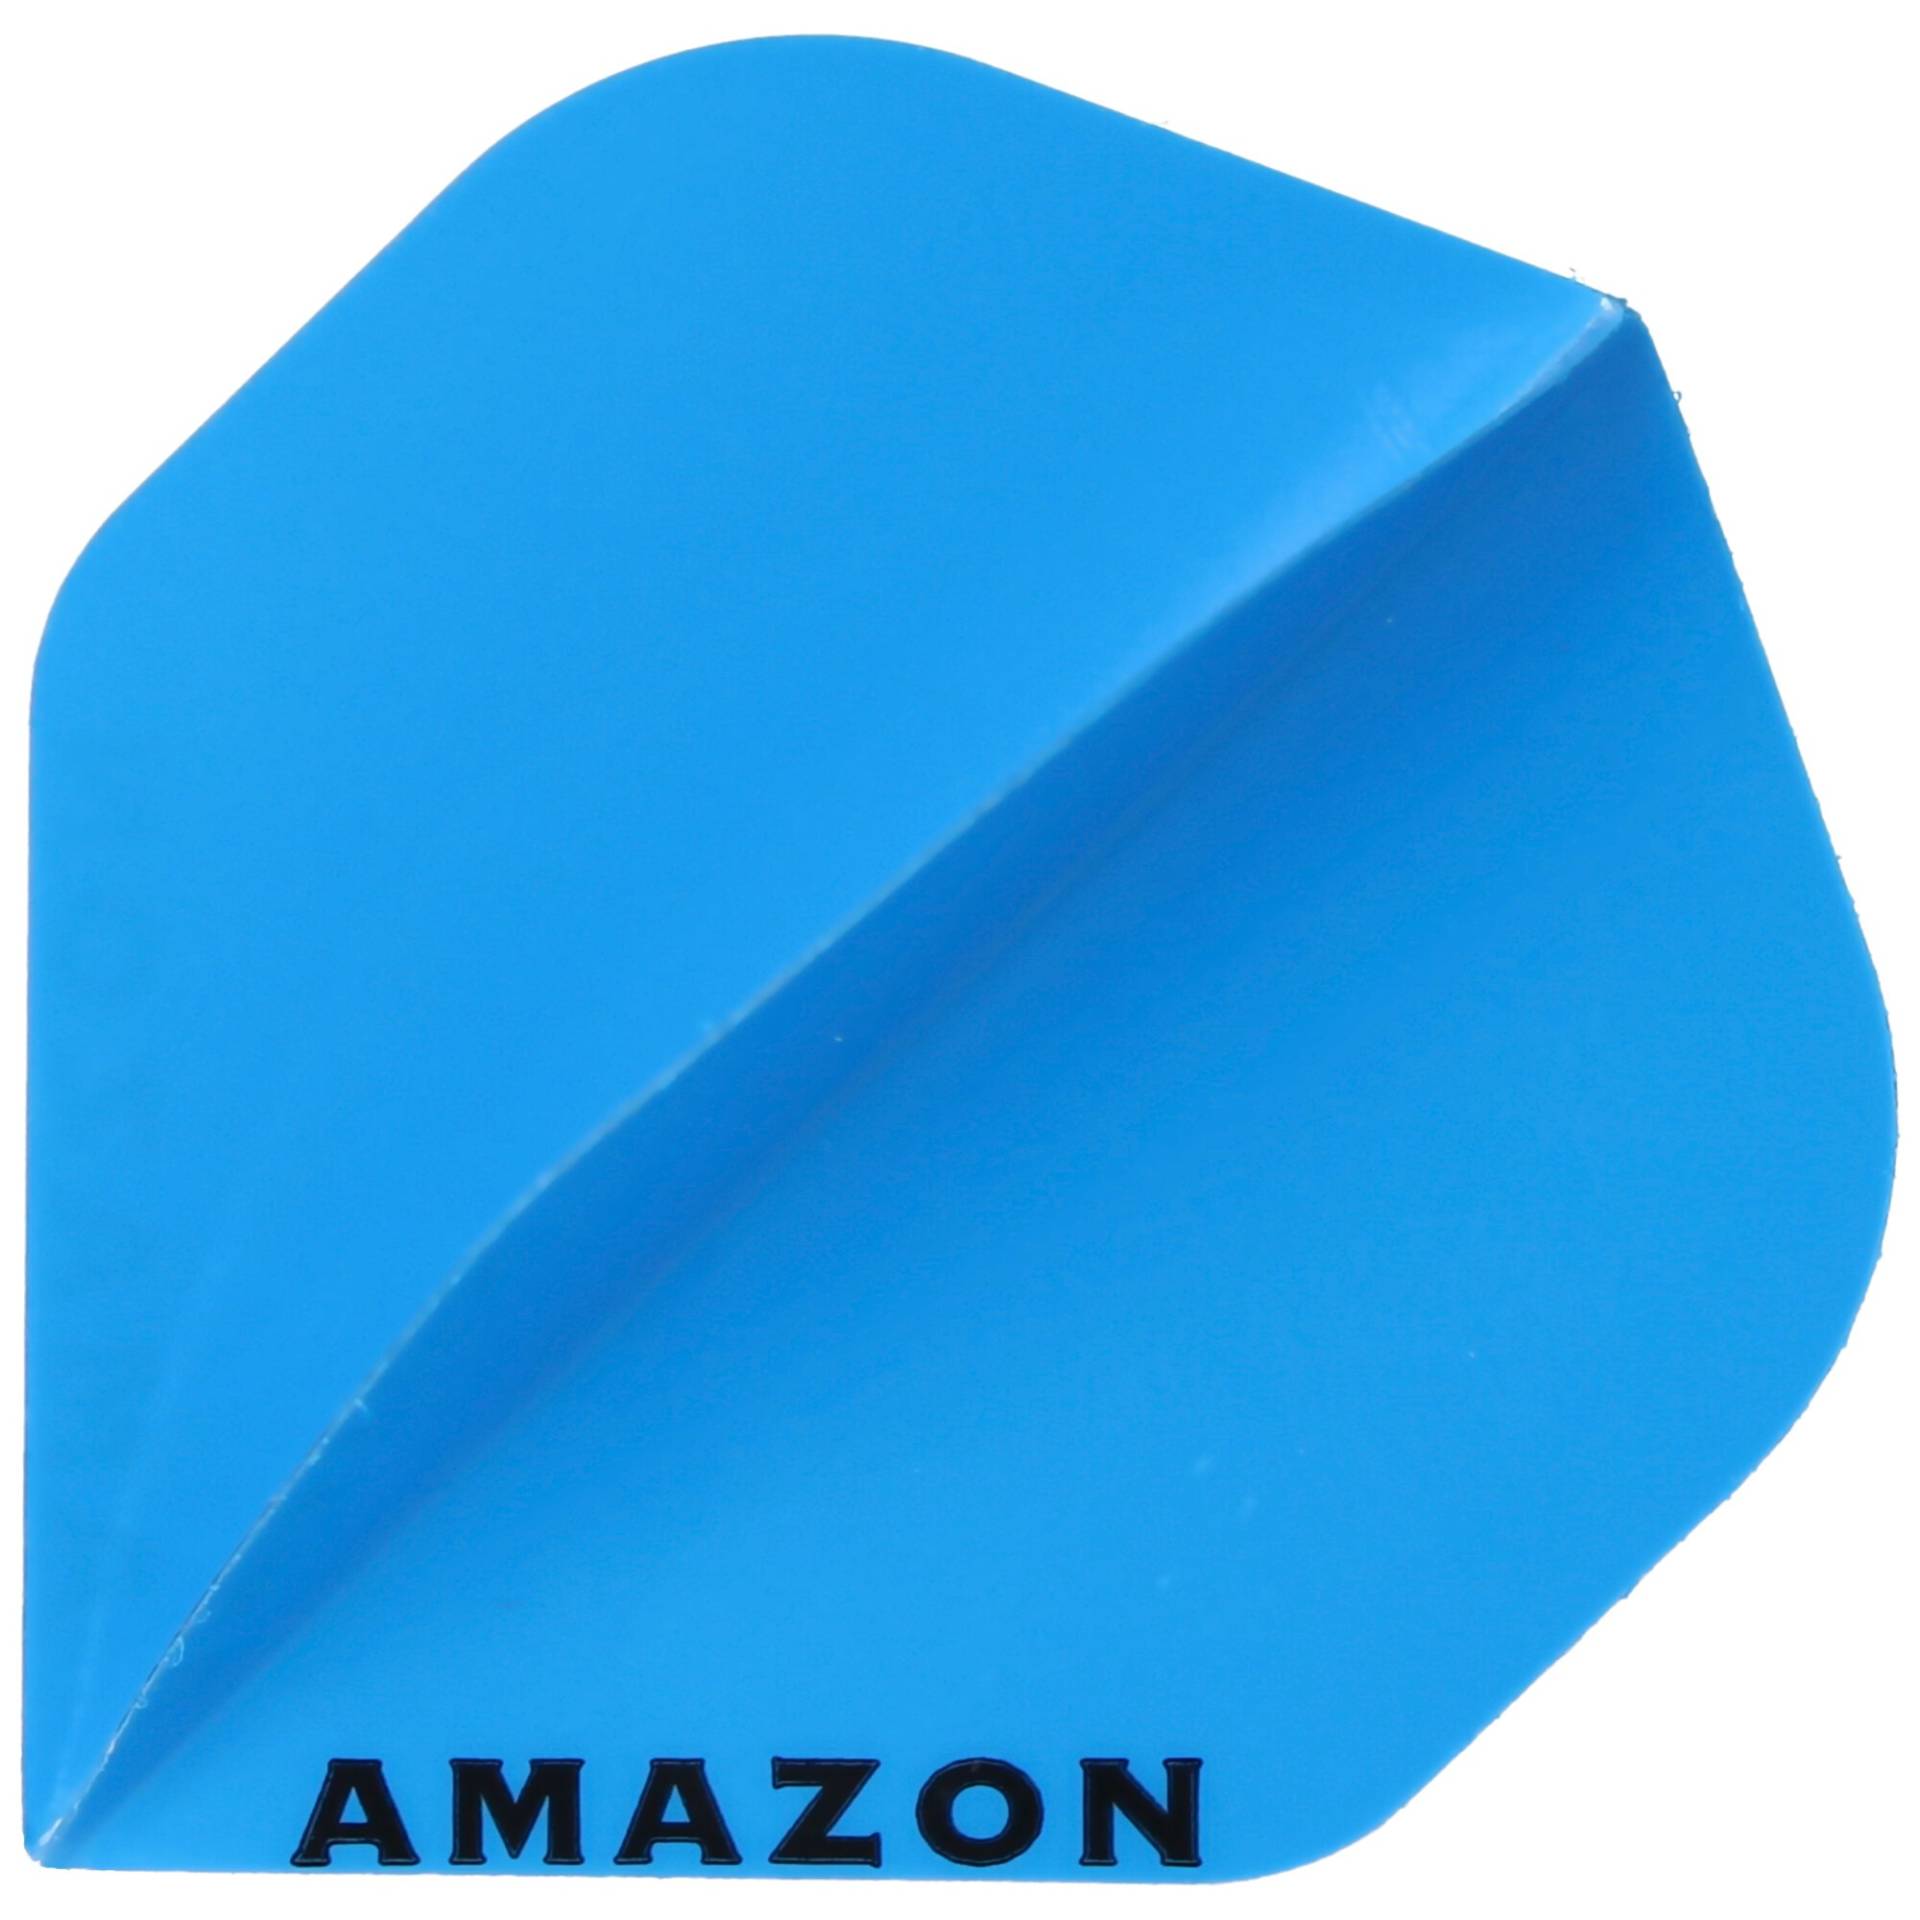 Amazon Flight blau mit schwarzem Aufdruck AMAZON von Pentathlon